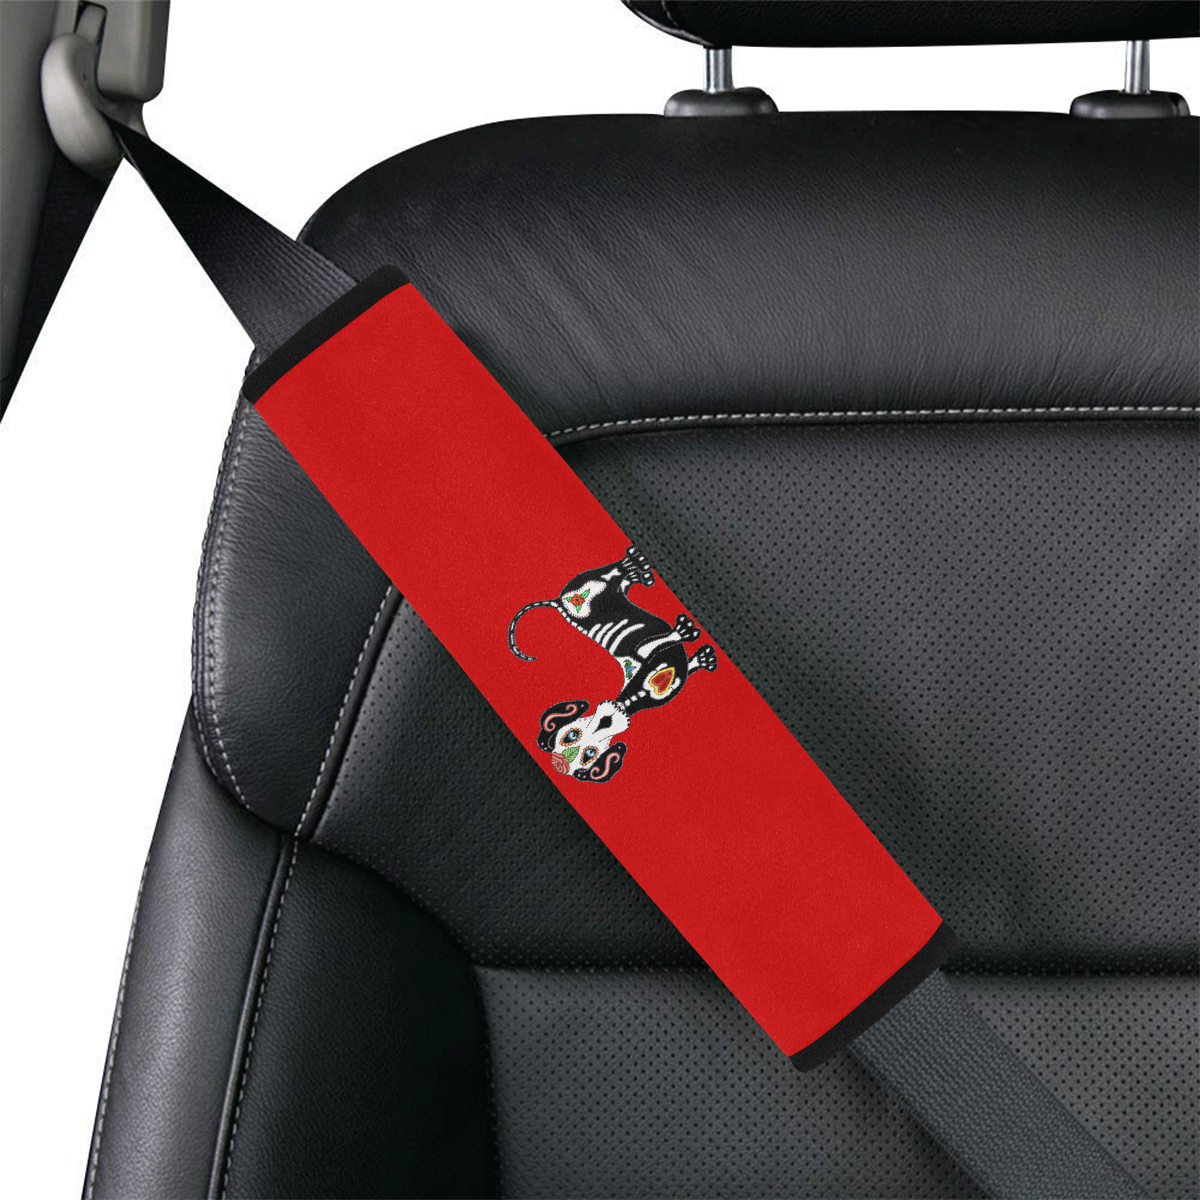 Dachshund Sugar Skull Red Car Seat Belt Cover 7''x12.6''